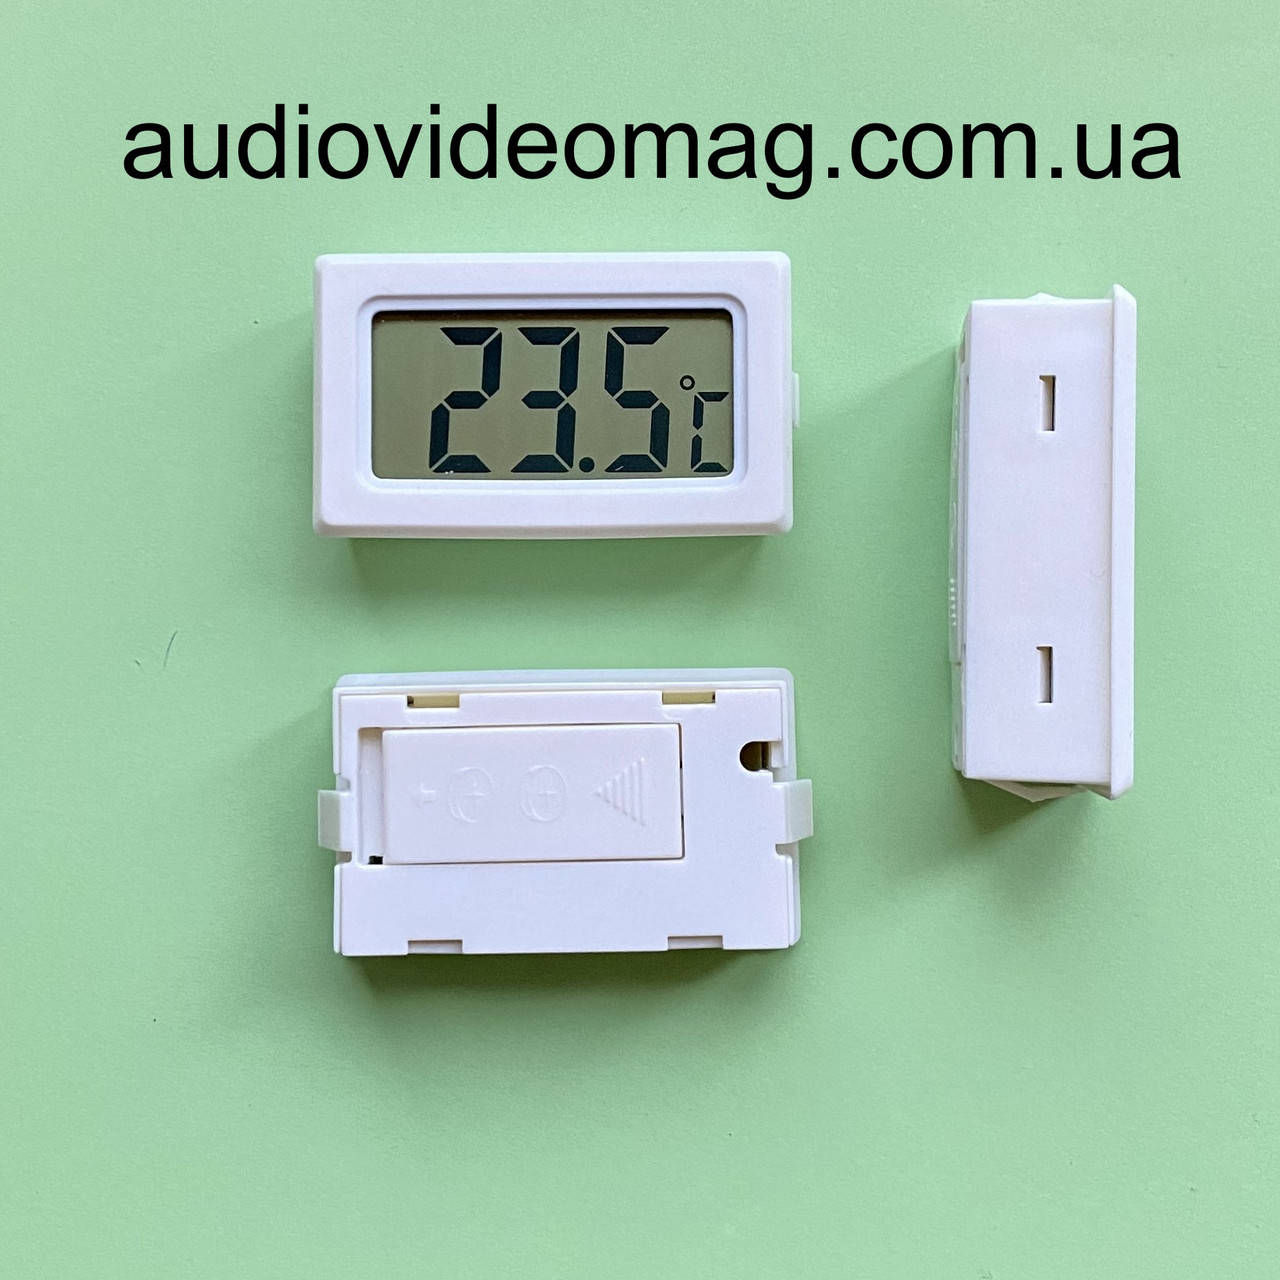 

Цифровой электронный термометр с внутренним датчиком, цвет черный